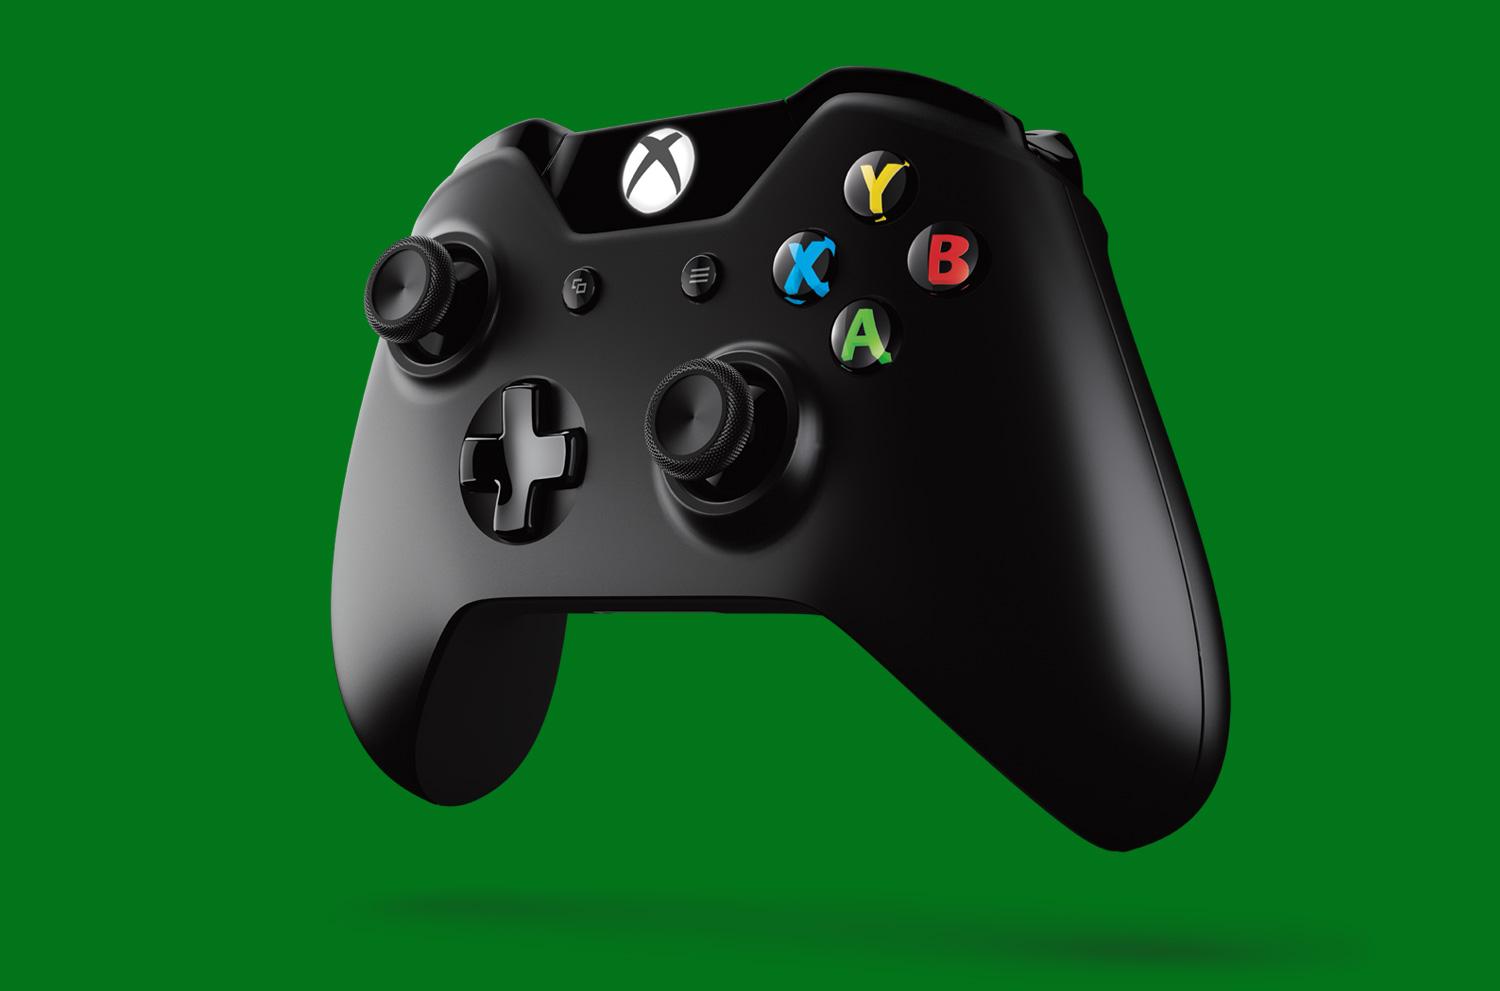 Bạn hãy nhìn vào chiếc bộ điều khiển Xbox đầy sức mạnh này! Tinh tế, tiện lợi, cầm nắm vừa tay! Nếu bạn là một game thủ thực thụ, hãy tìm hiểu về chiếc bộ điều khiển tuyệt vời này để trải nghiệm cảm giác tuyệt vời khi chơi game.